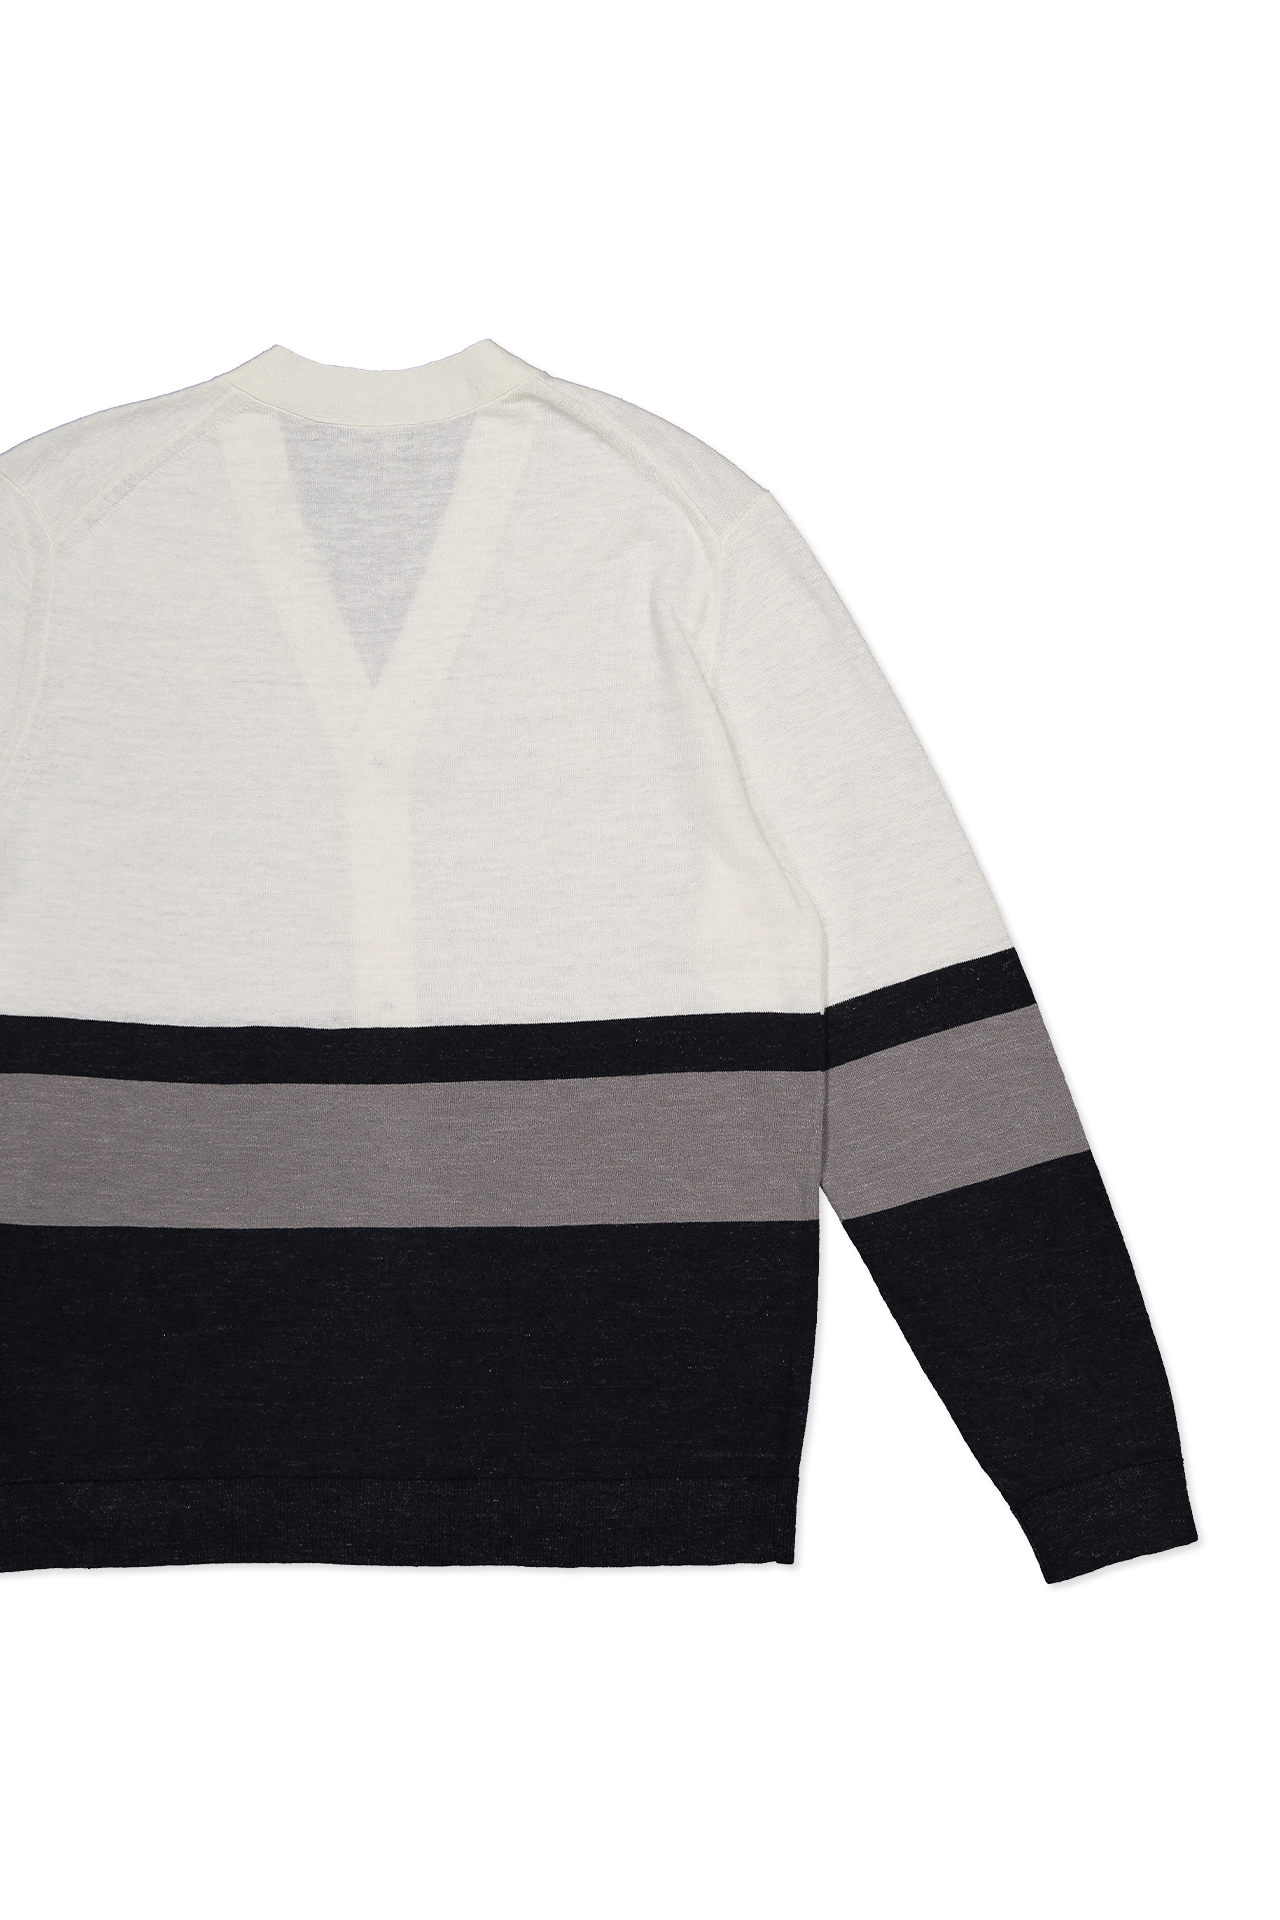 Larus Cardigan Sweater (7145028976755)